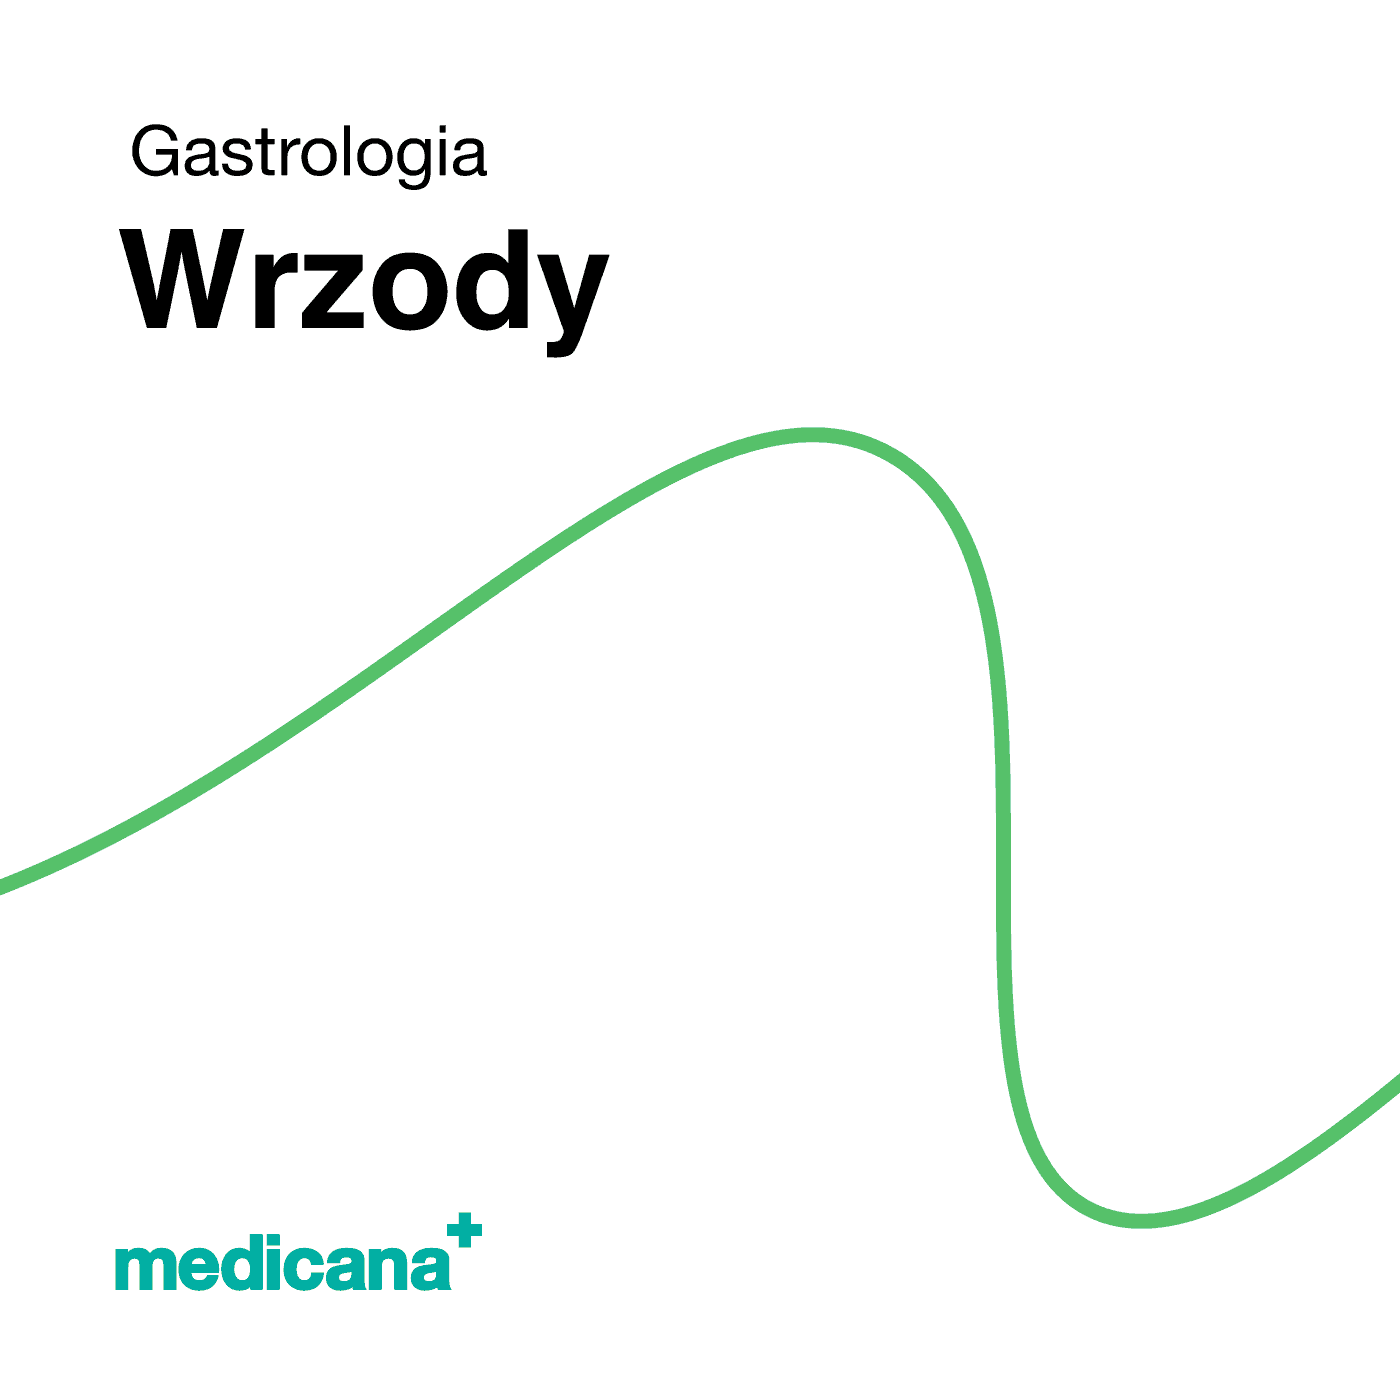 Grafika, białe tło z zieloną kreską, czarnym napisem Gastrologia - Wrzody i logo Medicana Centrum Terapii Medyczna Marihuana w lewym dolnym rogu.